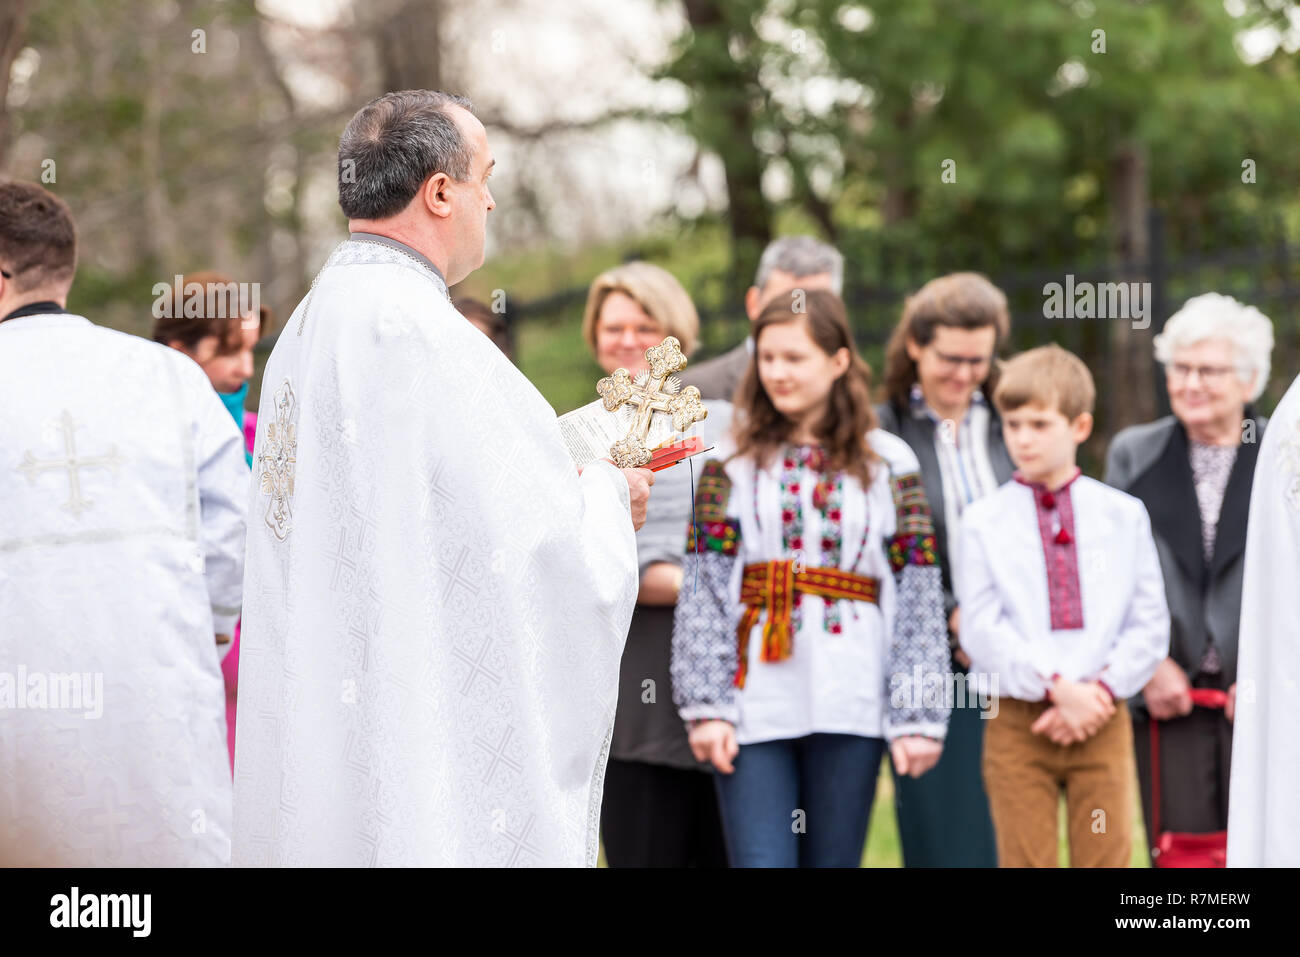 Washington DC, USA - April 1, 2018: Menschen, Priester beten, Holding kreuz Segen zu Ostern Körbe auf dem Ukrainischen Katholischen Nationalen Schrein der Heiligen Fam Stockfoto